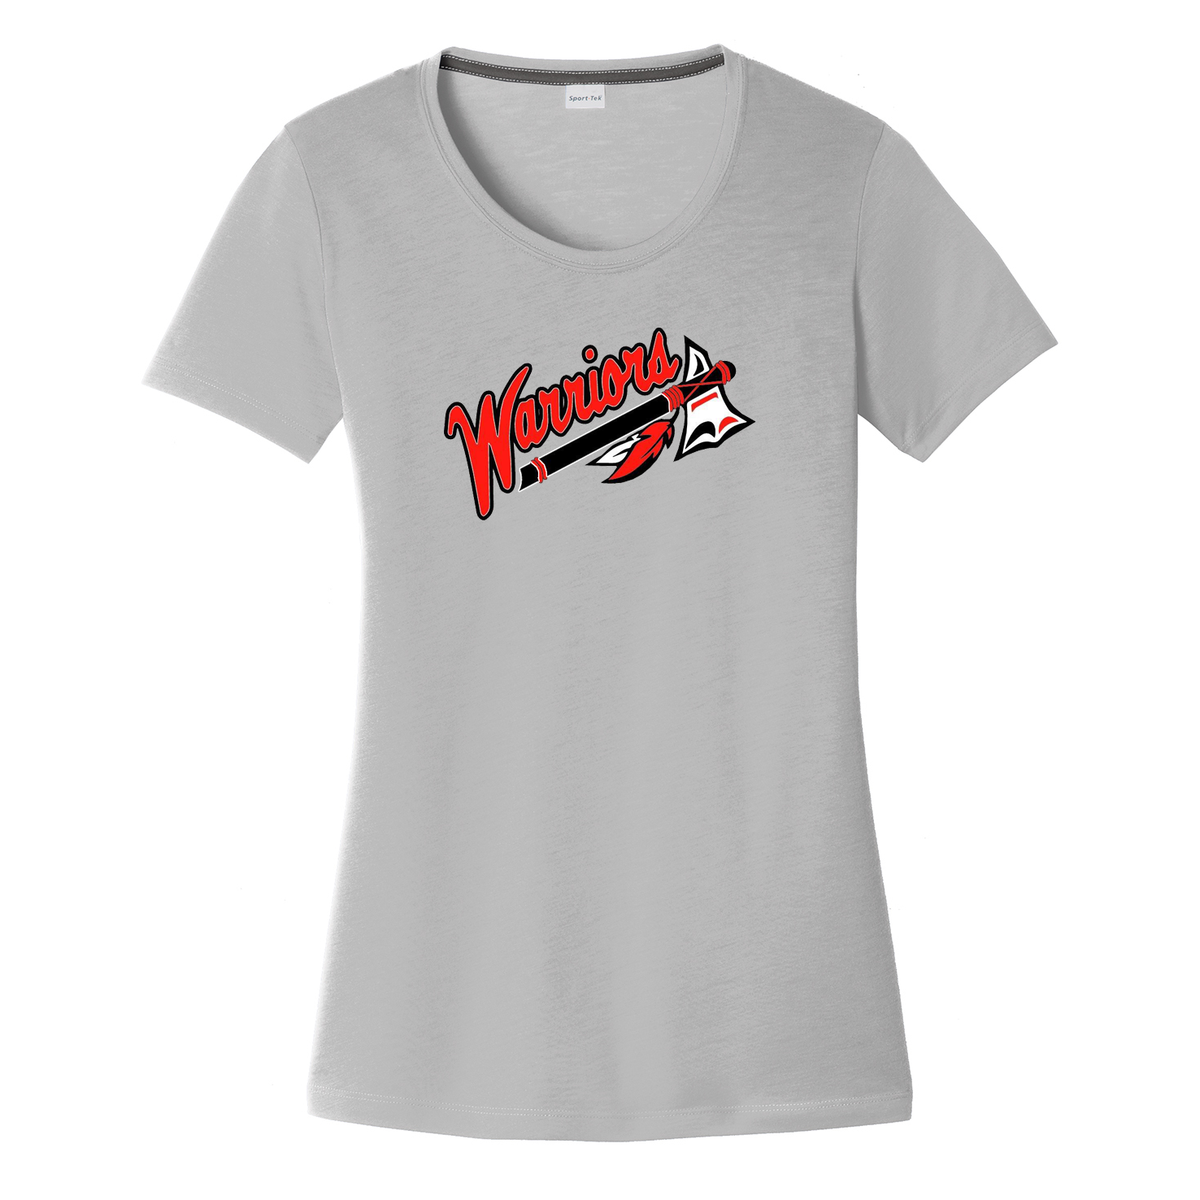 Dothan Warriors Softball Women's CottonTouch Performance T-Shirt